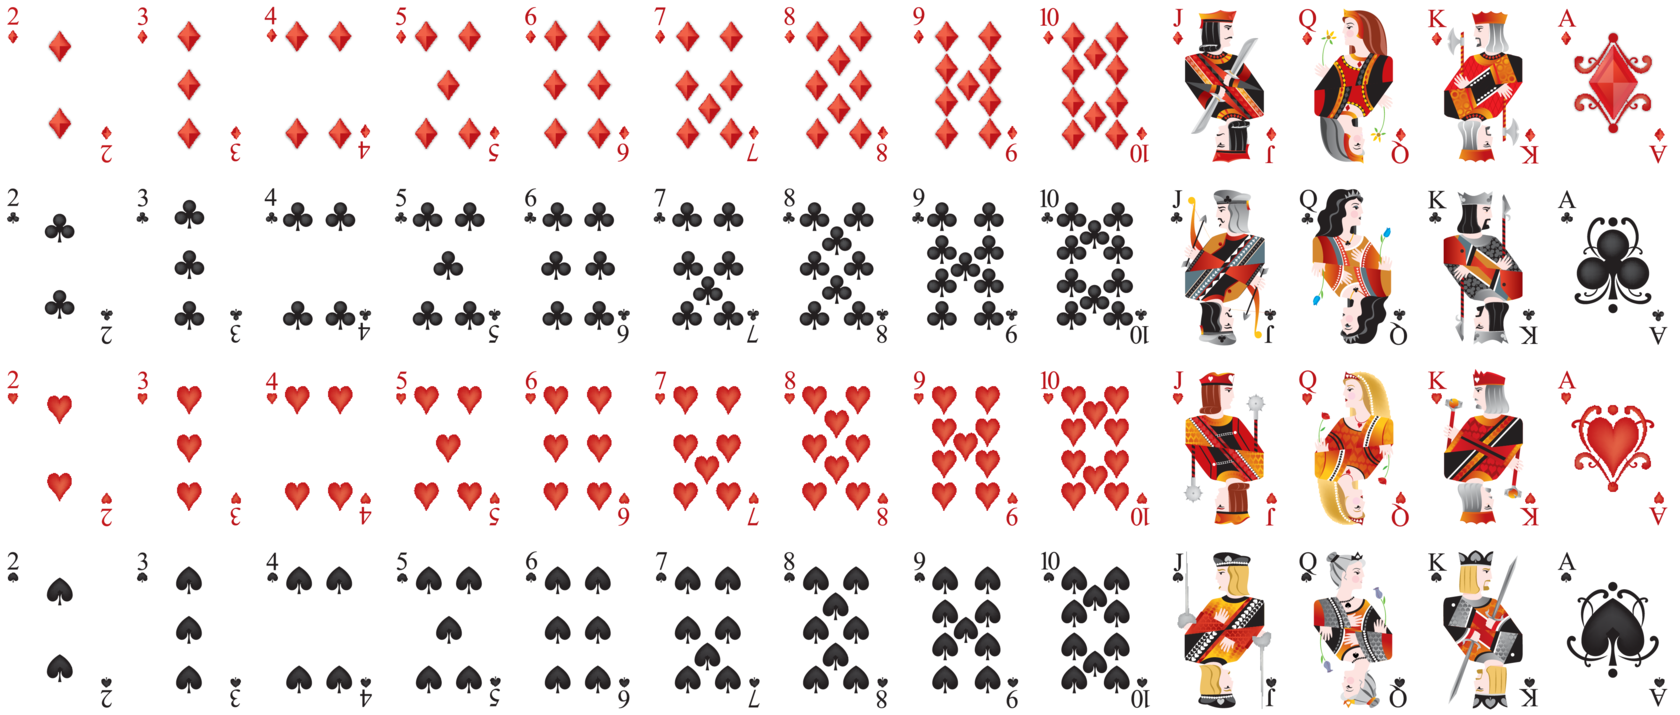 Покер колода 52 карты. Игральные карты Покер колода. Колода карт 52 Poker playing Cards Standard. Игральные карты колода 54. Маленький когда в маленькую игру играю карту